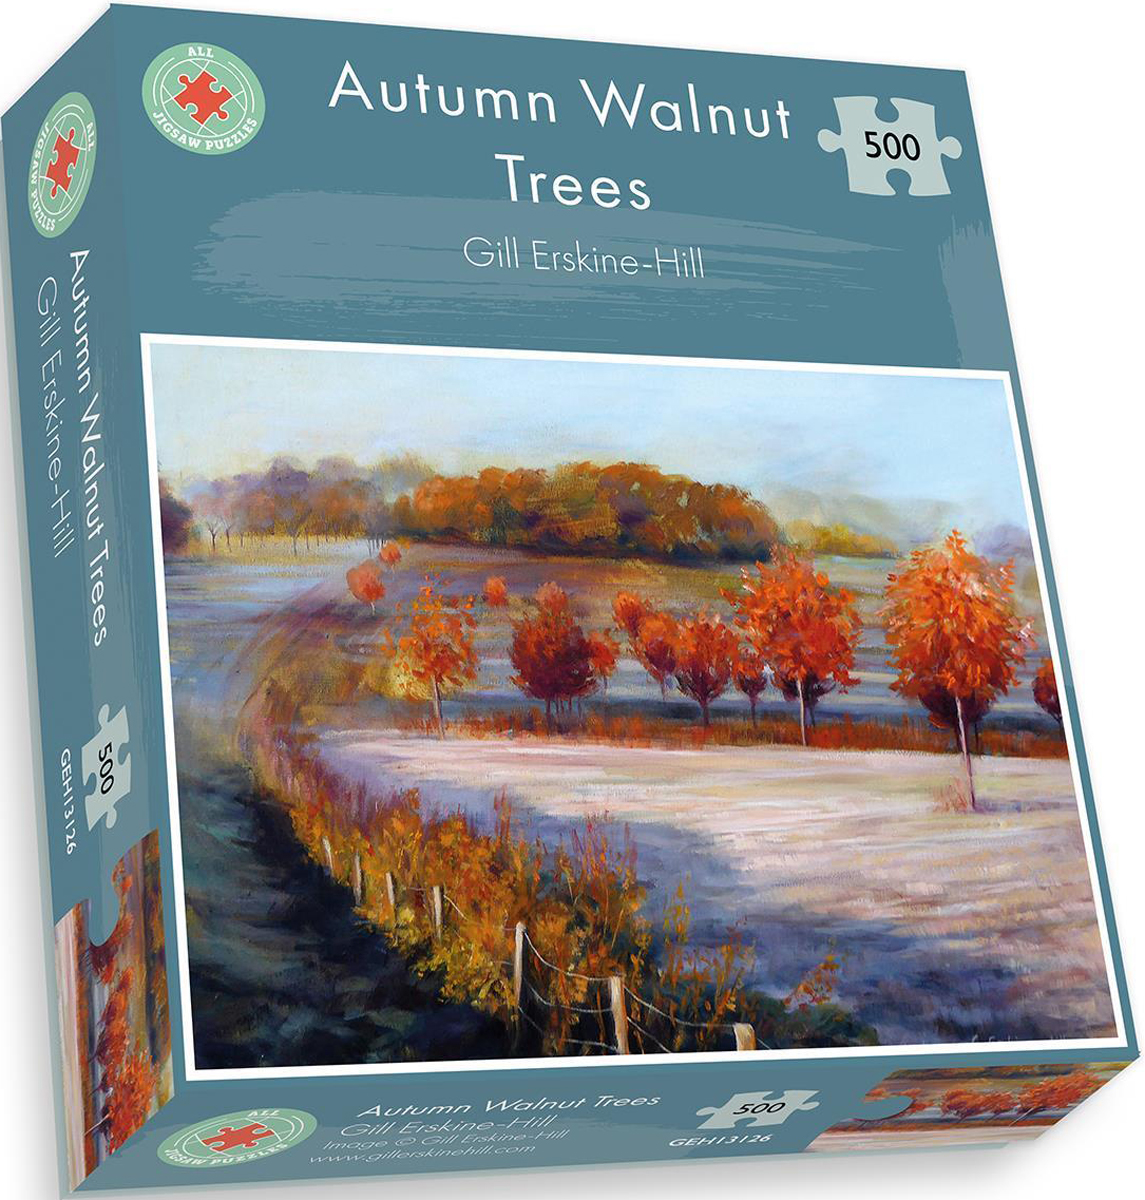 Autumn Walnut Trees